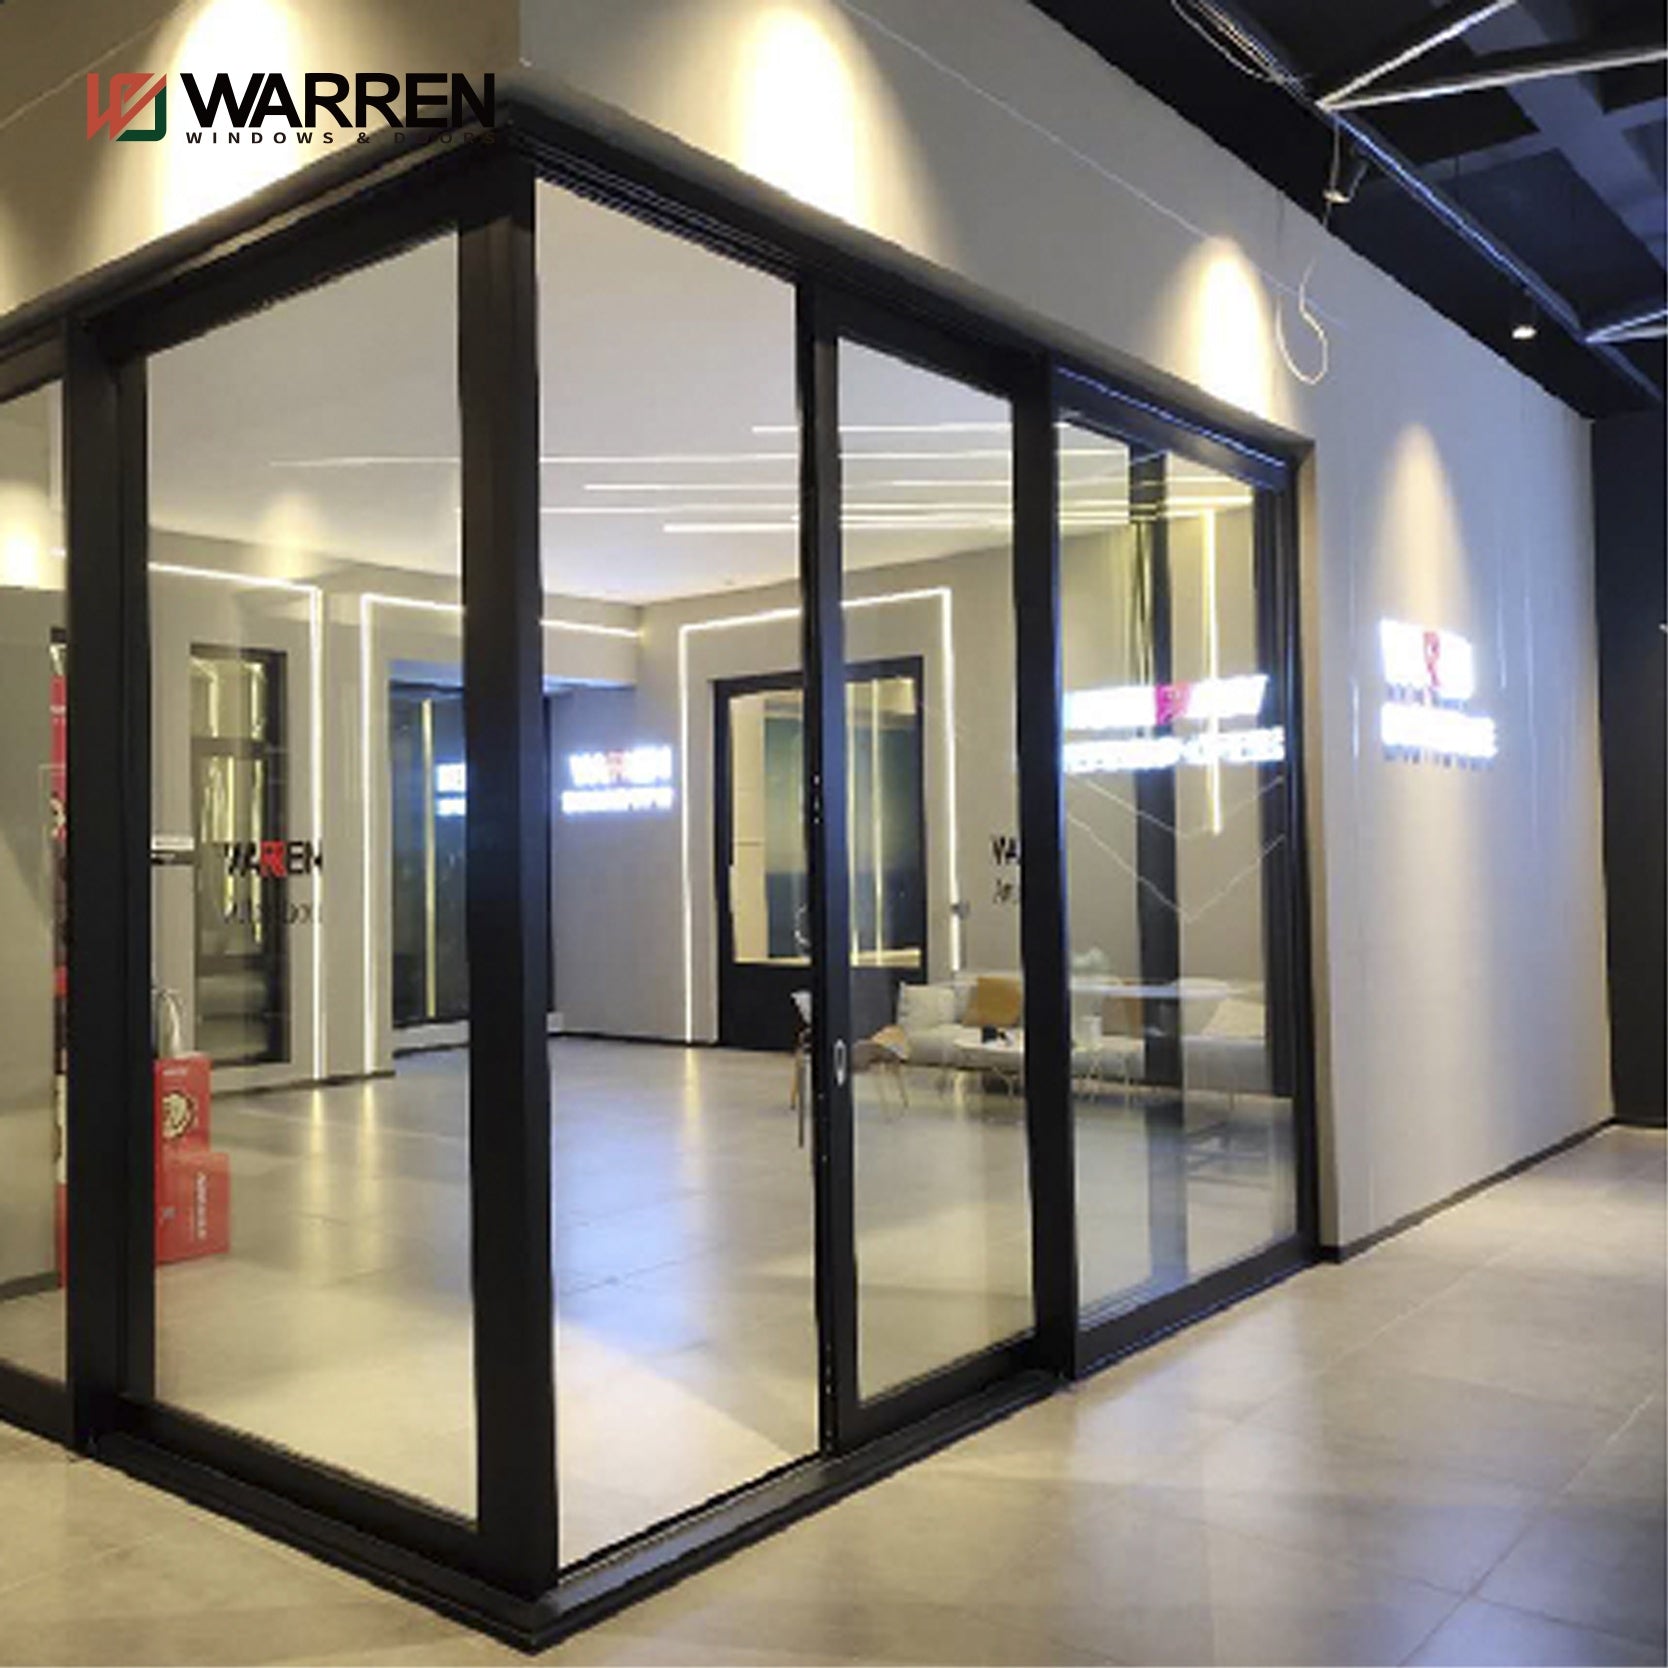 Warren International design 106*58 door thermal break aluminium sliding door double glass